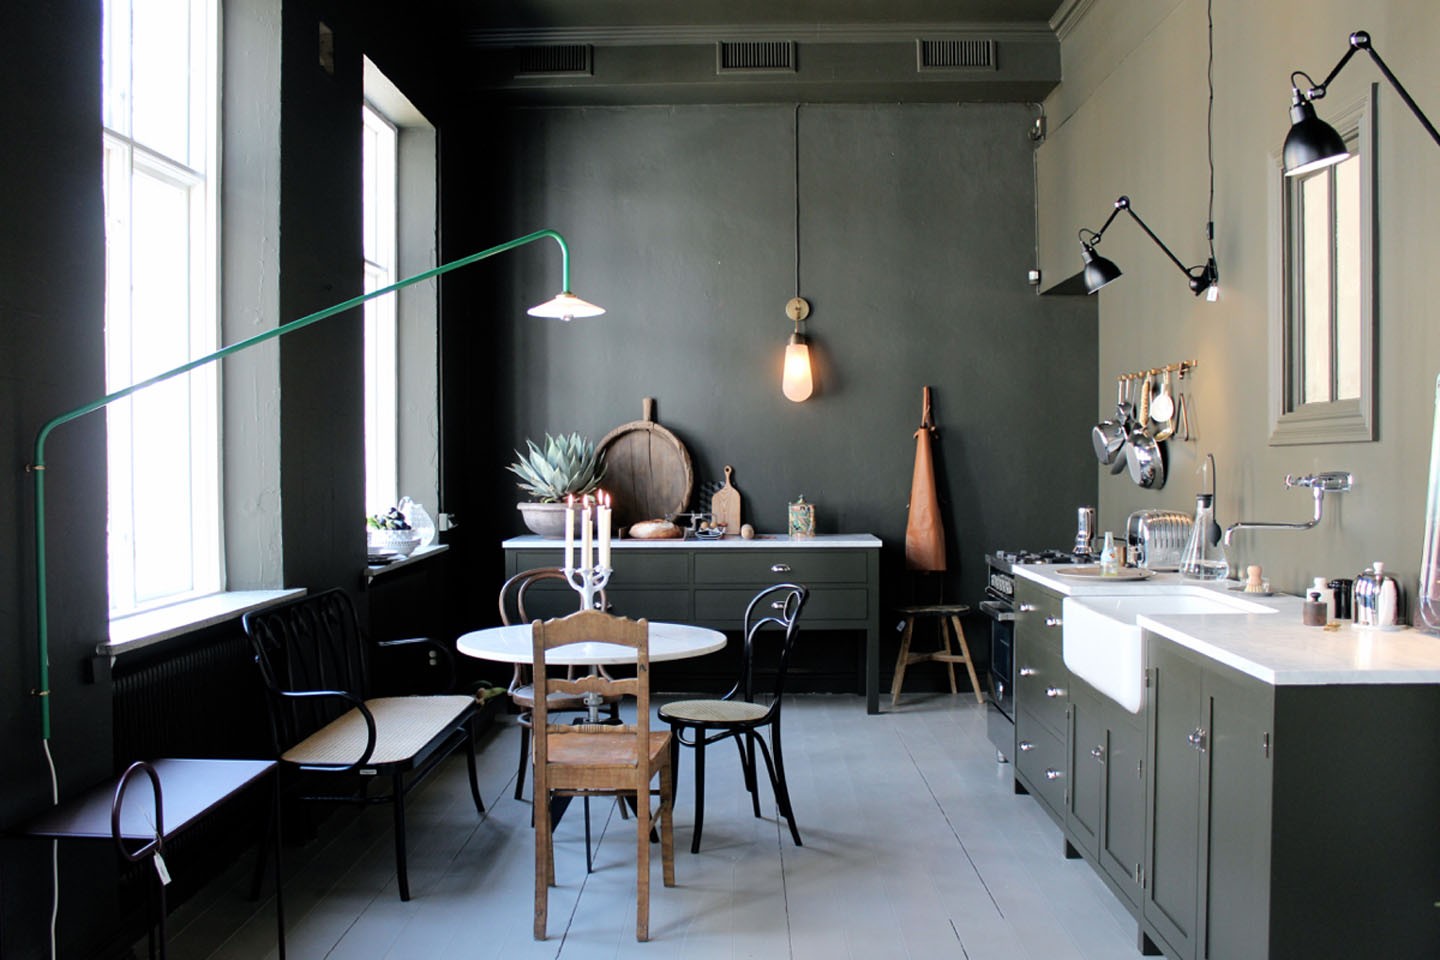 Décor do dia: cozinha escandinava em tons escuros - Casa Vogue